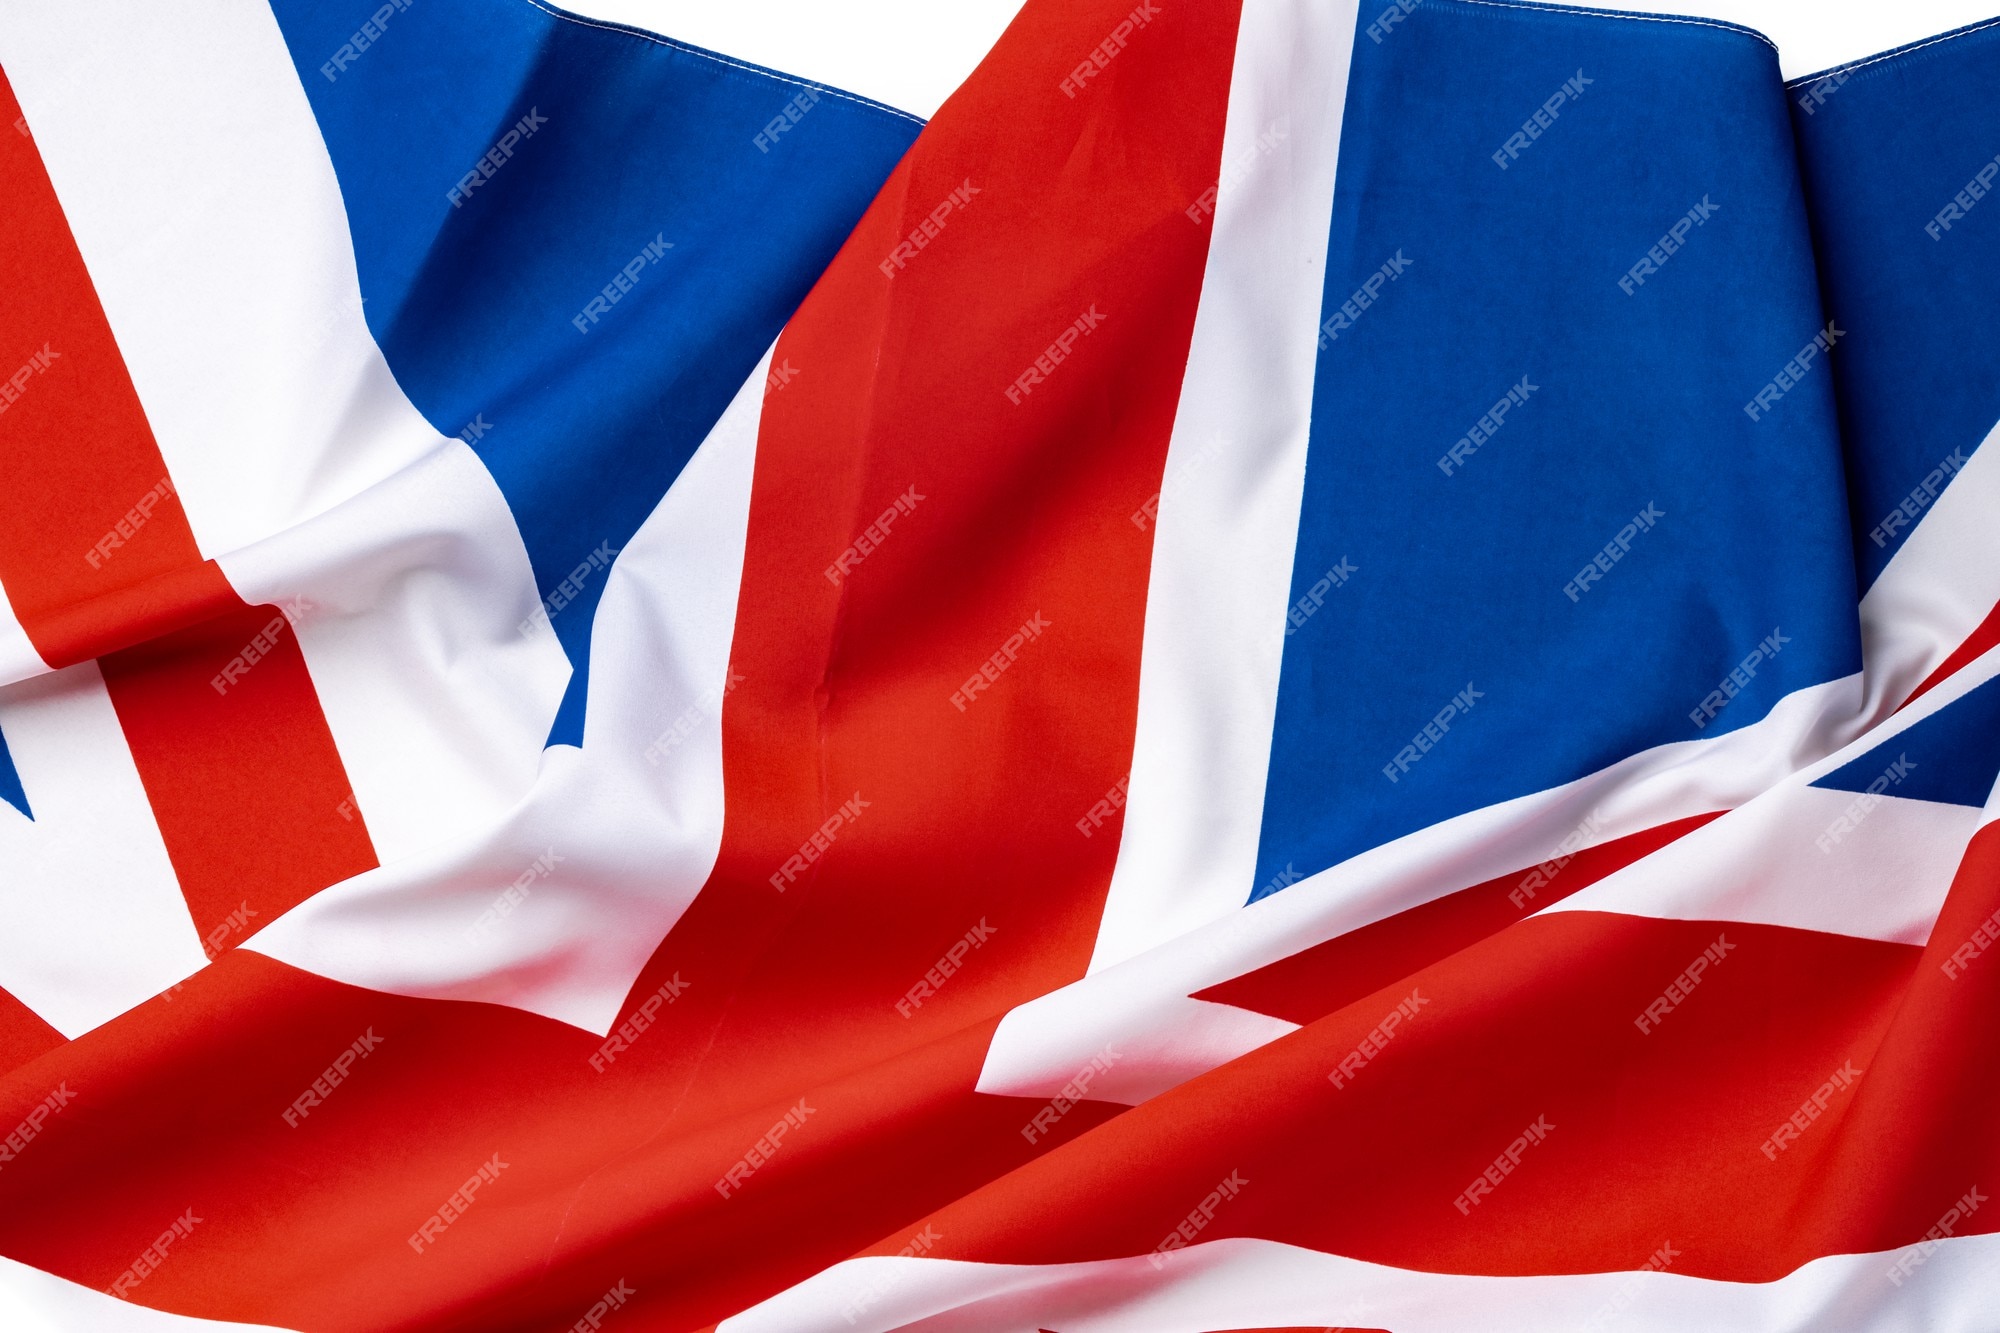 Cờ Liên hiệp Anh đại diện cho một trong những nước có lịch sử lâu đời và văn hóa phát triển nhất thế giới. Màu đỏ, xanh và trắng của nó tối giản nhưng đầy ý nghĩa. Hãy chiêm ngưỡng hình ảnh này để khám phá thêm về vẻ đẹp của cờ Liên hiệp Anh.